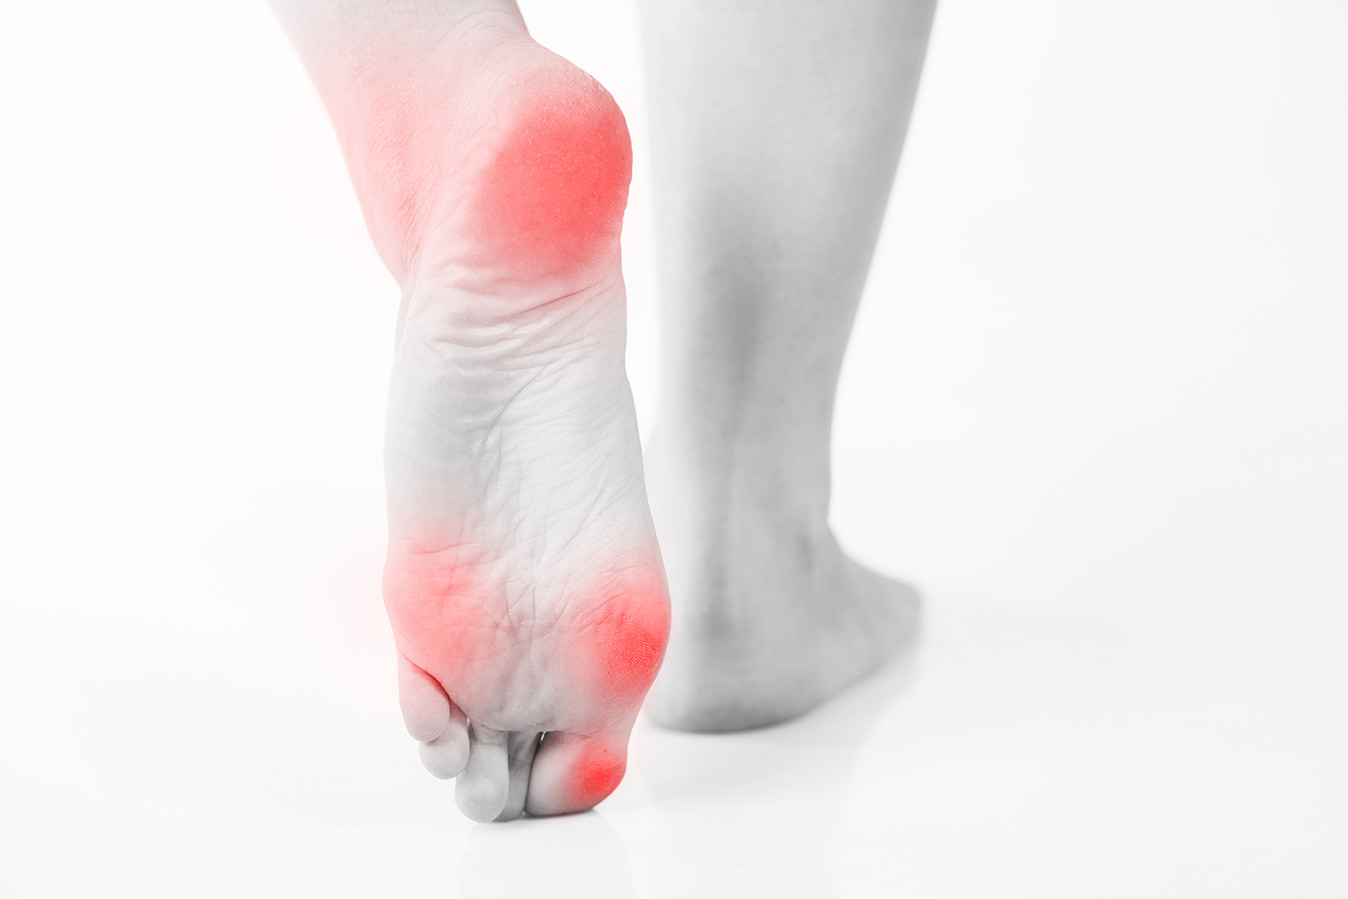 Symptoms of foot calluses in diabetes